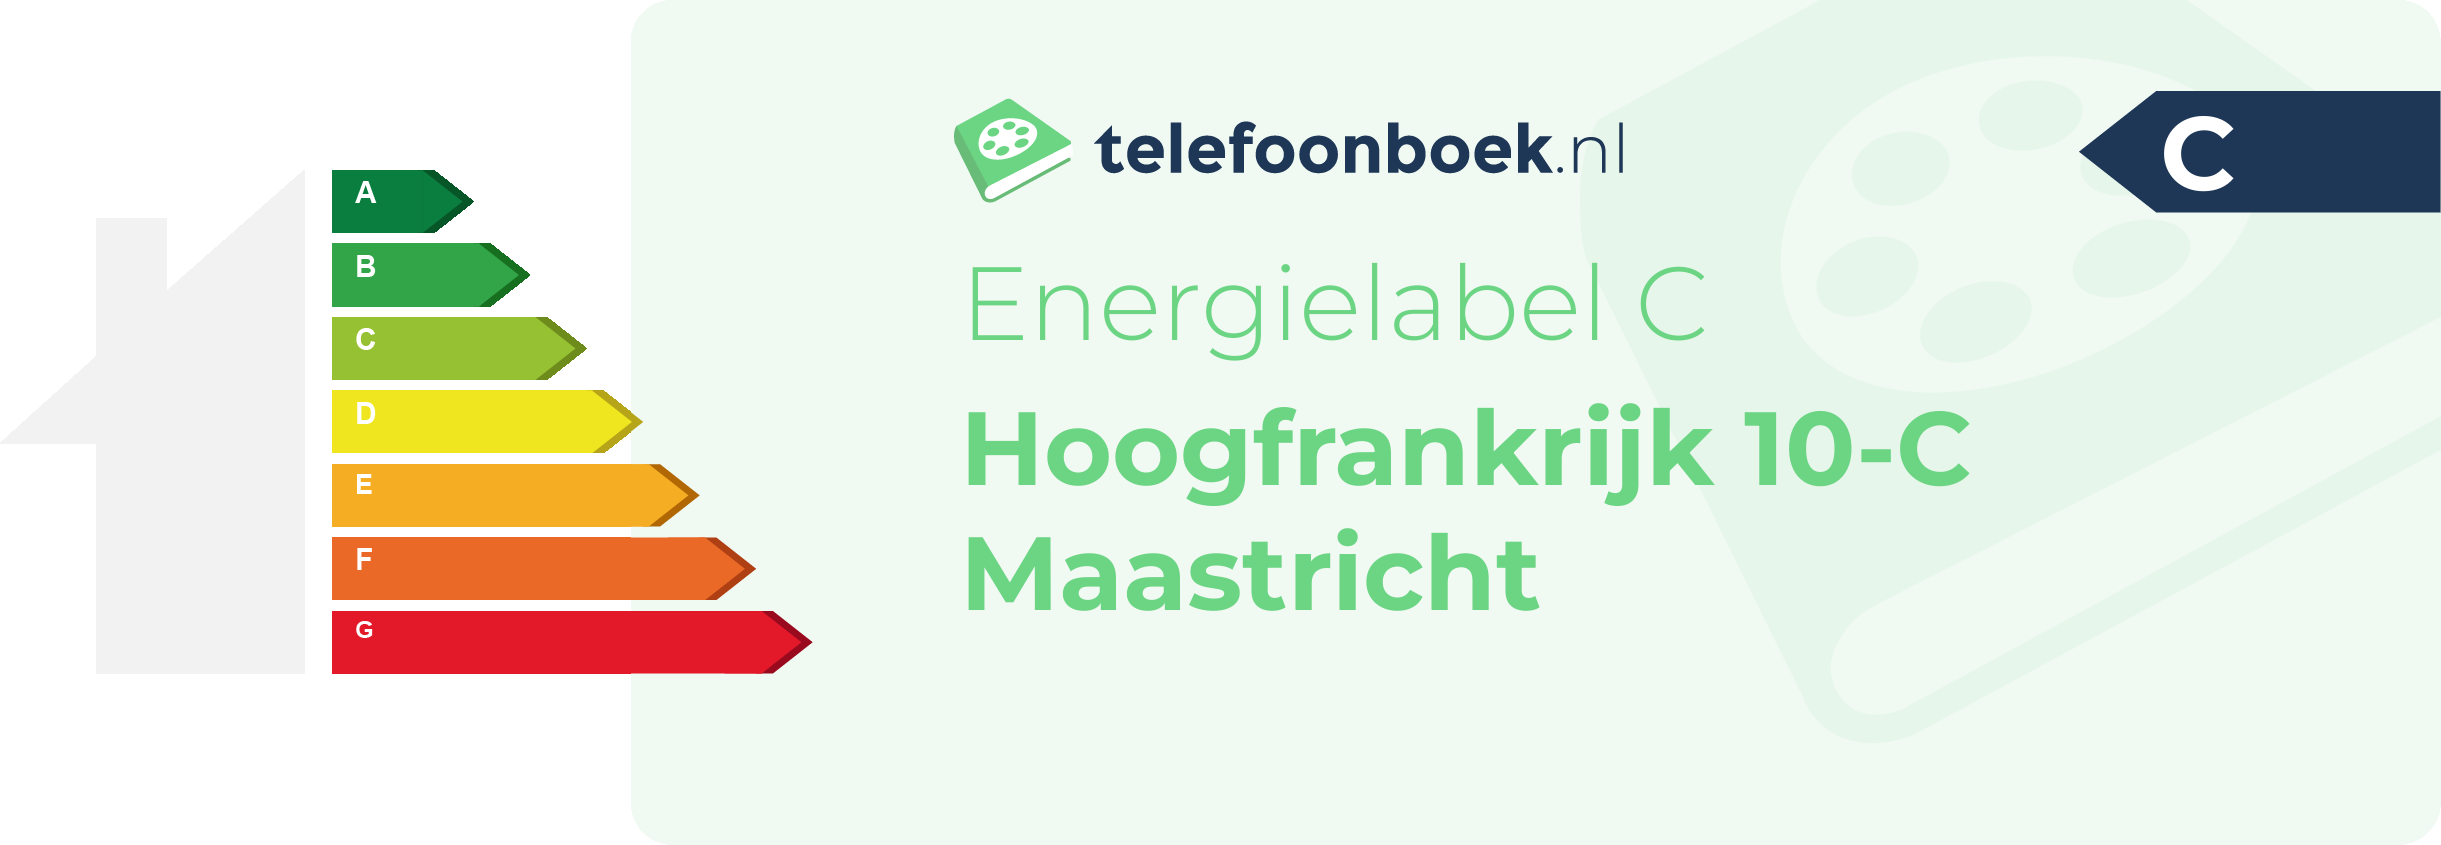 Energielabel Hoogfrankrijk 10-C Maastricht